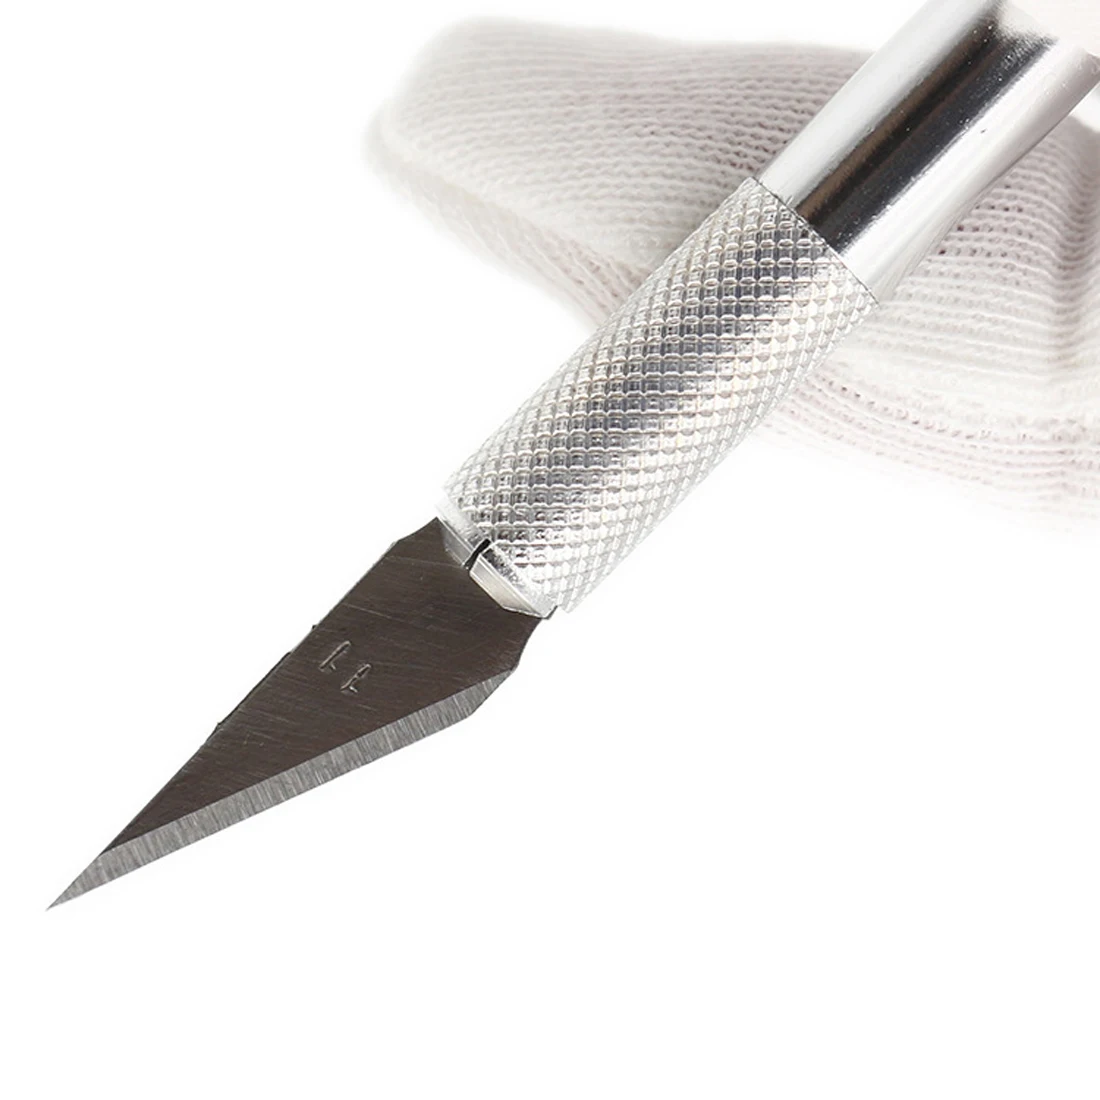 Хороший нескользящий металлический нож для скальпеля набор инструментов Резак гравировальные ремесленные ножи+ 6 шт. лезвия мобильный телефон PCB DIY